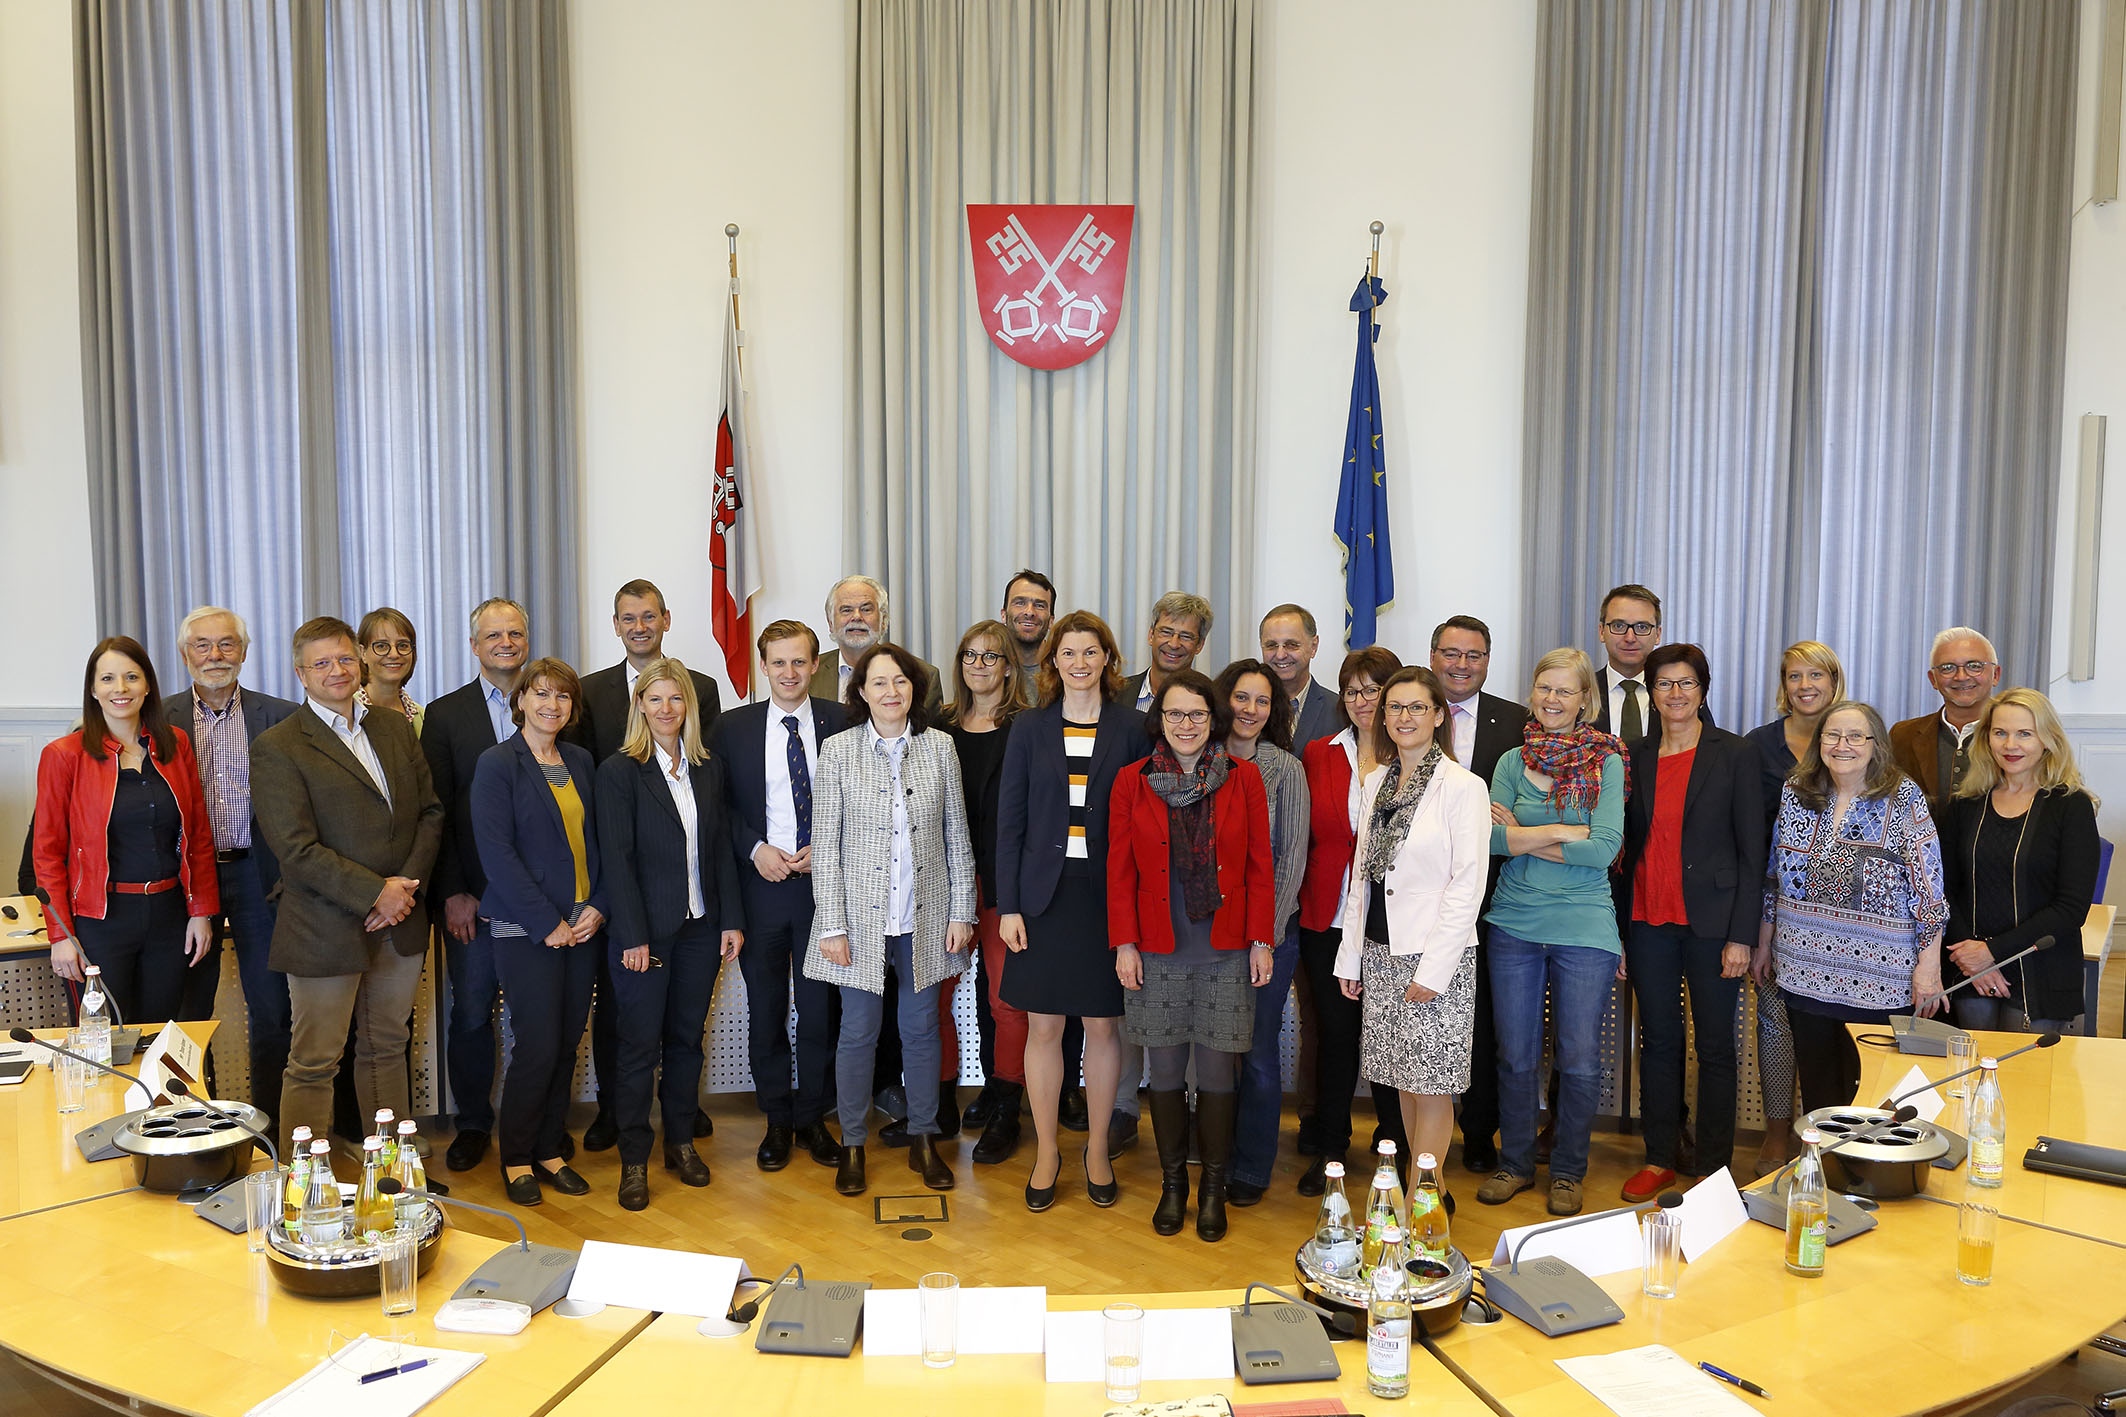 Mitglieder der Gesundheitsregionplus Regensburg beim Gruppenfoto